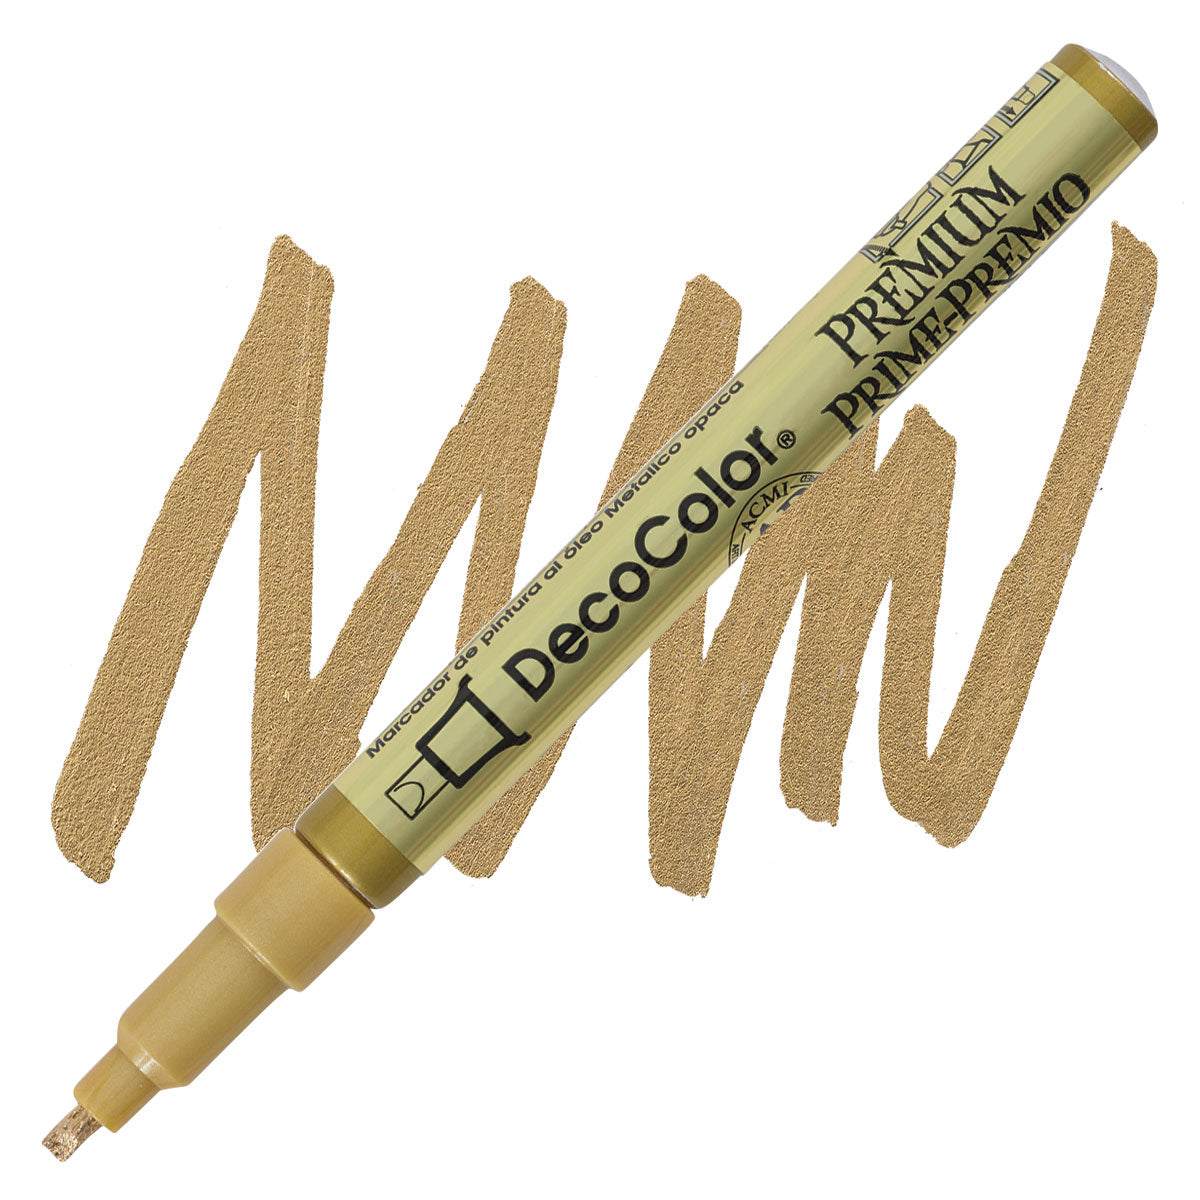 Decocolor Premium Paint Marker, 2mm Leafing/Flat Tip